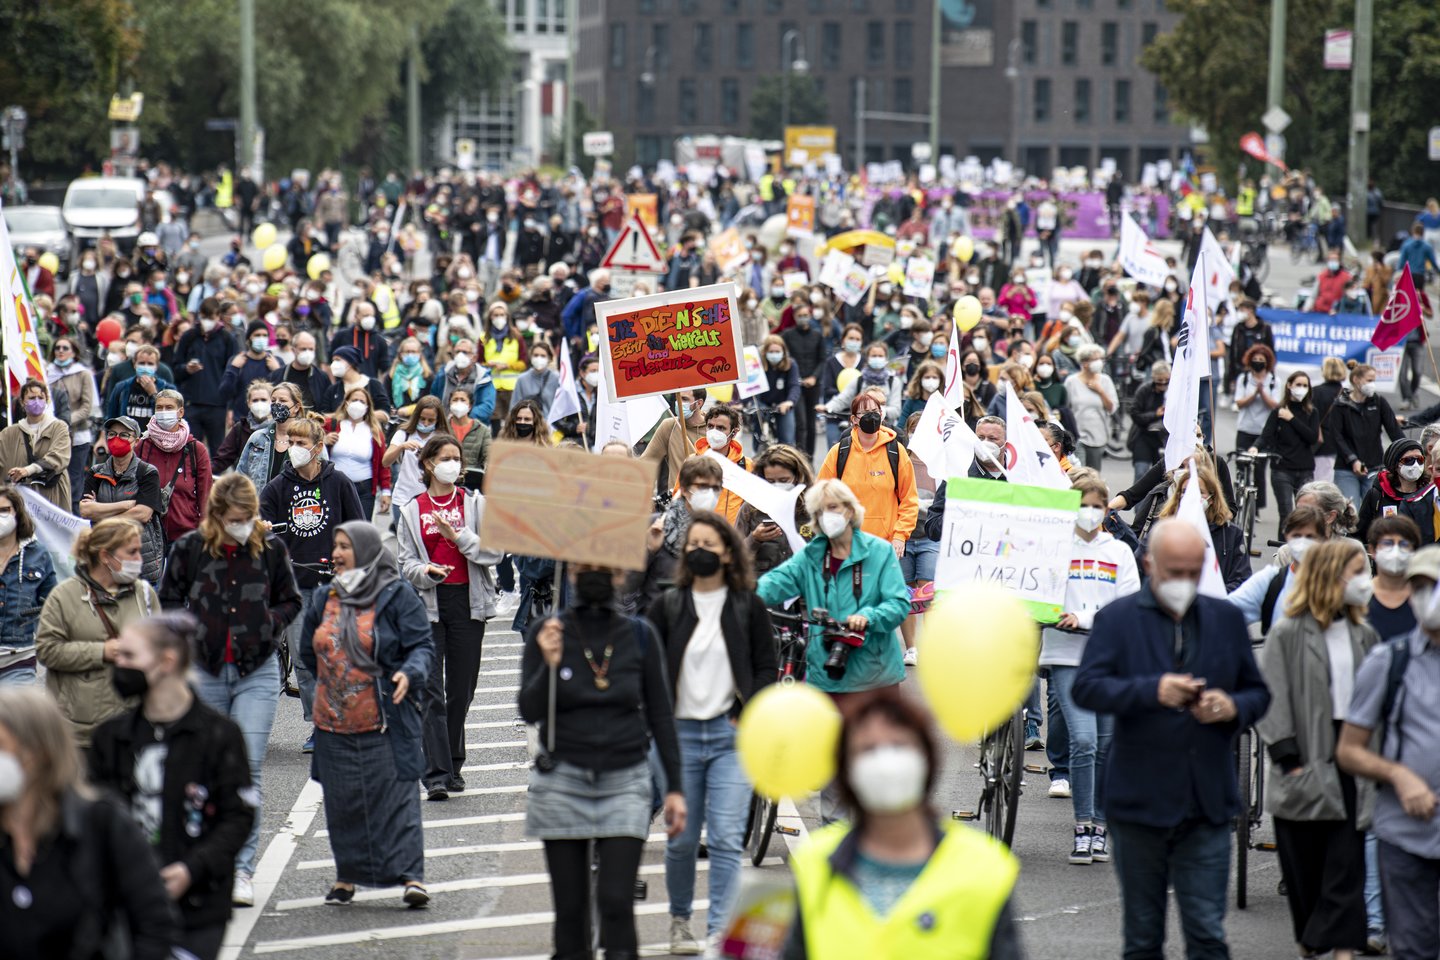  Tūkstančiai aktyvistų per šeštadienio protestą Berlyne reikalavo įtraukesnės ir progresyvesnės visuomenės, pranešė vokiečių naujienų agentūra DPA.  <br> AP/Scanpix nuotr.